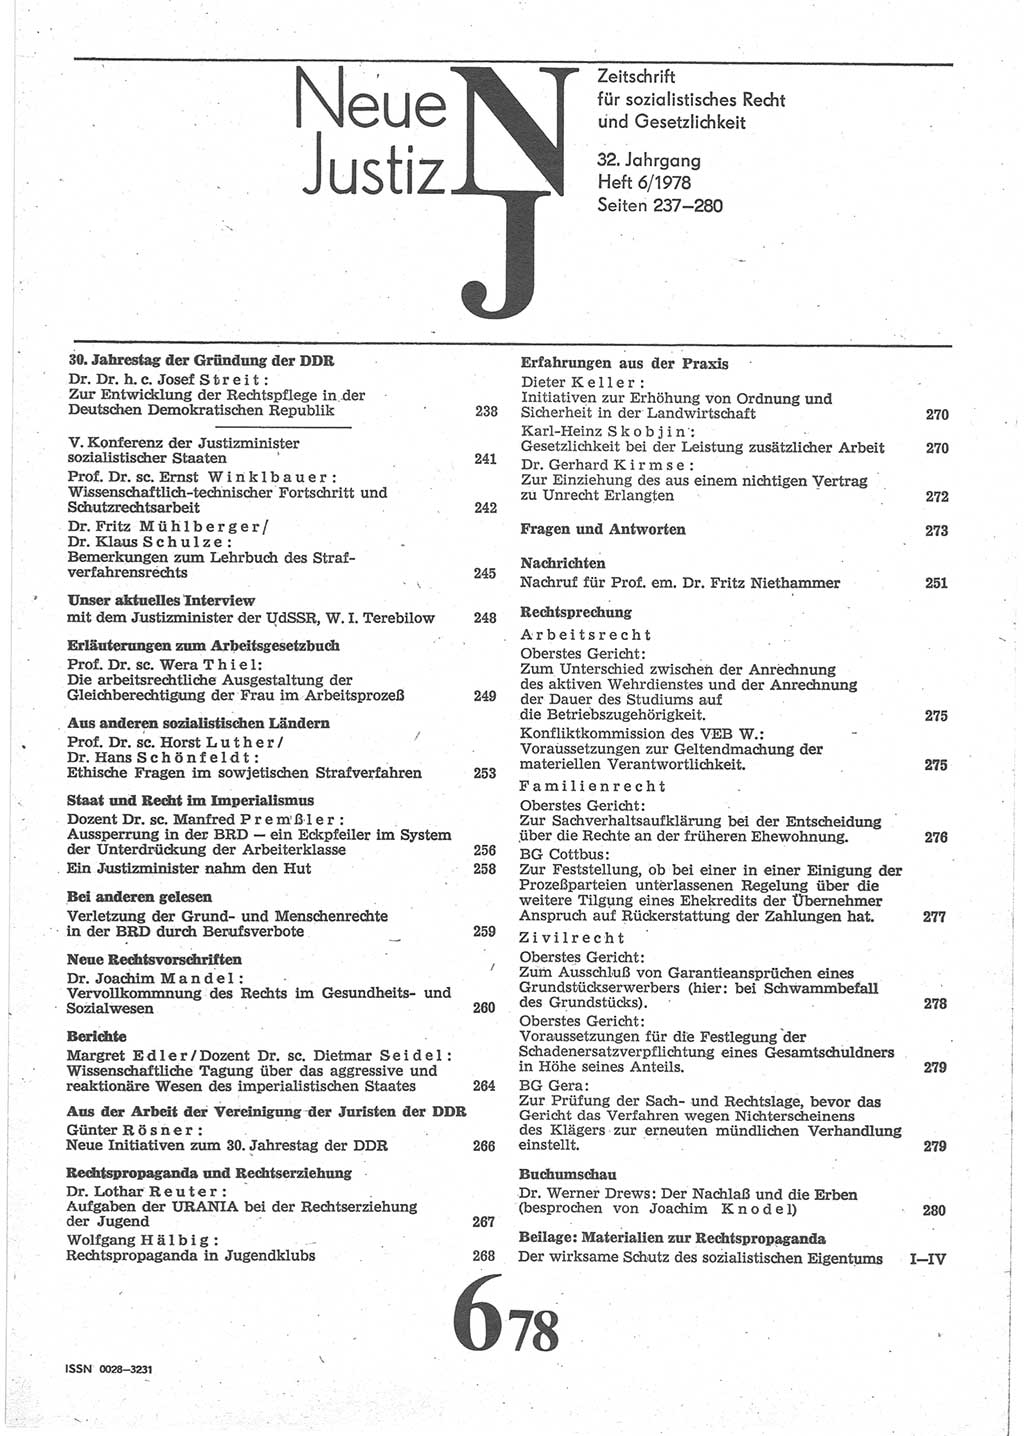 Neue Justiz (NJ), Zeitschrift für sozialistisches Recht und Gesetzlichkeit [Deutsche Demokratische Republik (DDR)], 32. Jahrgang 1978, Seite 237 (NJ DDR 1978, S. 237)